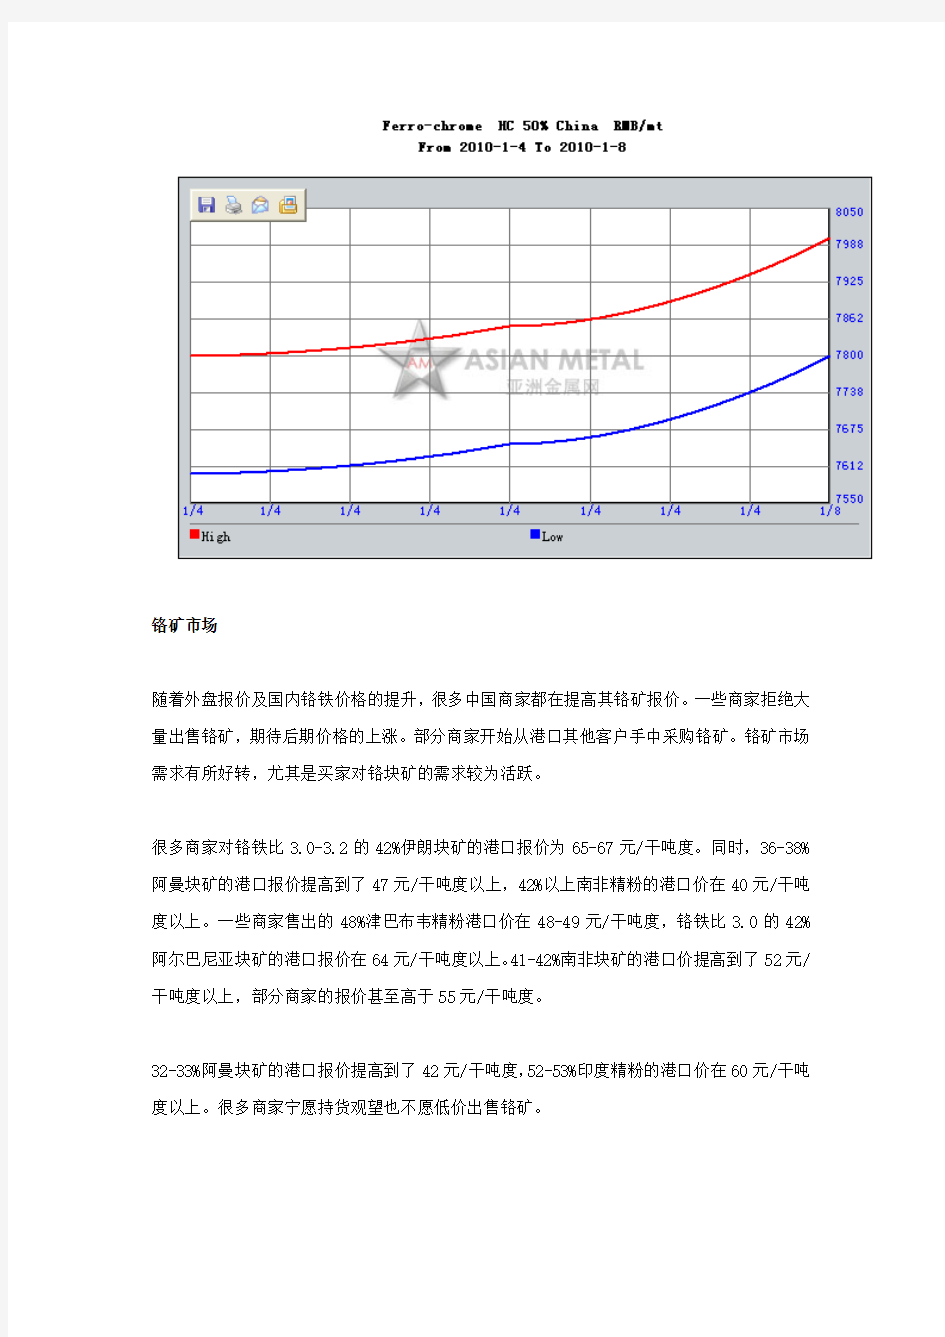 中国铬市场周评(1.4-1.8)